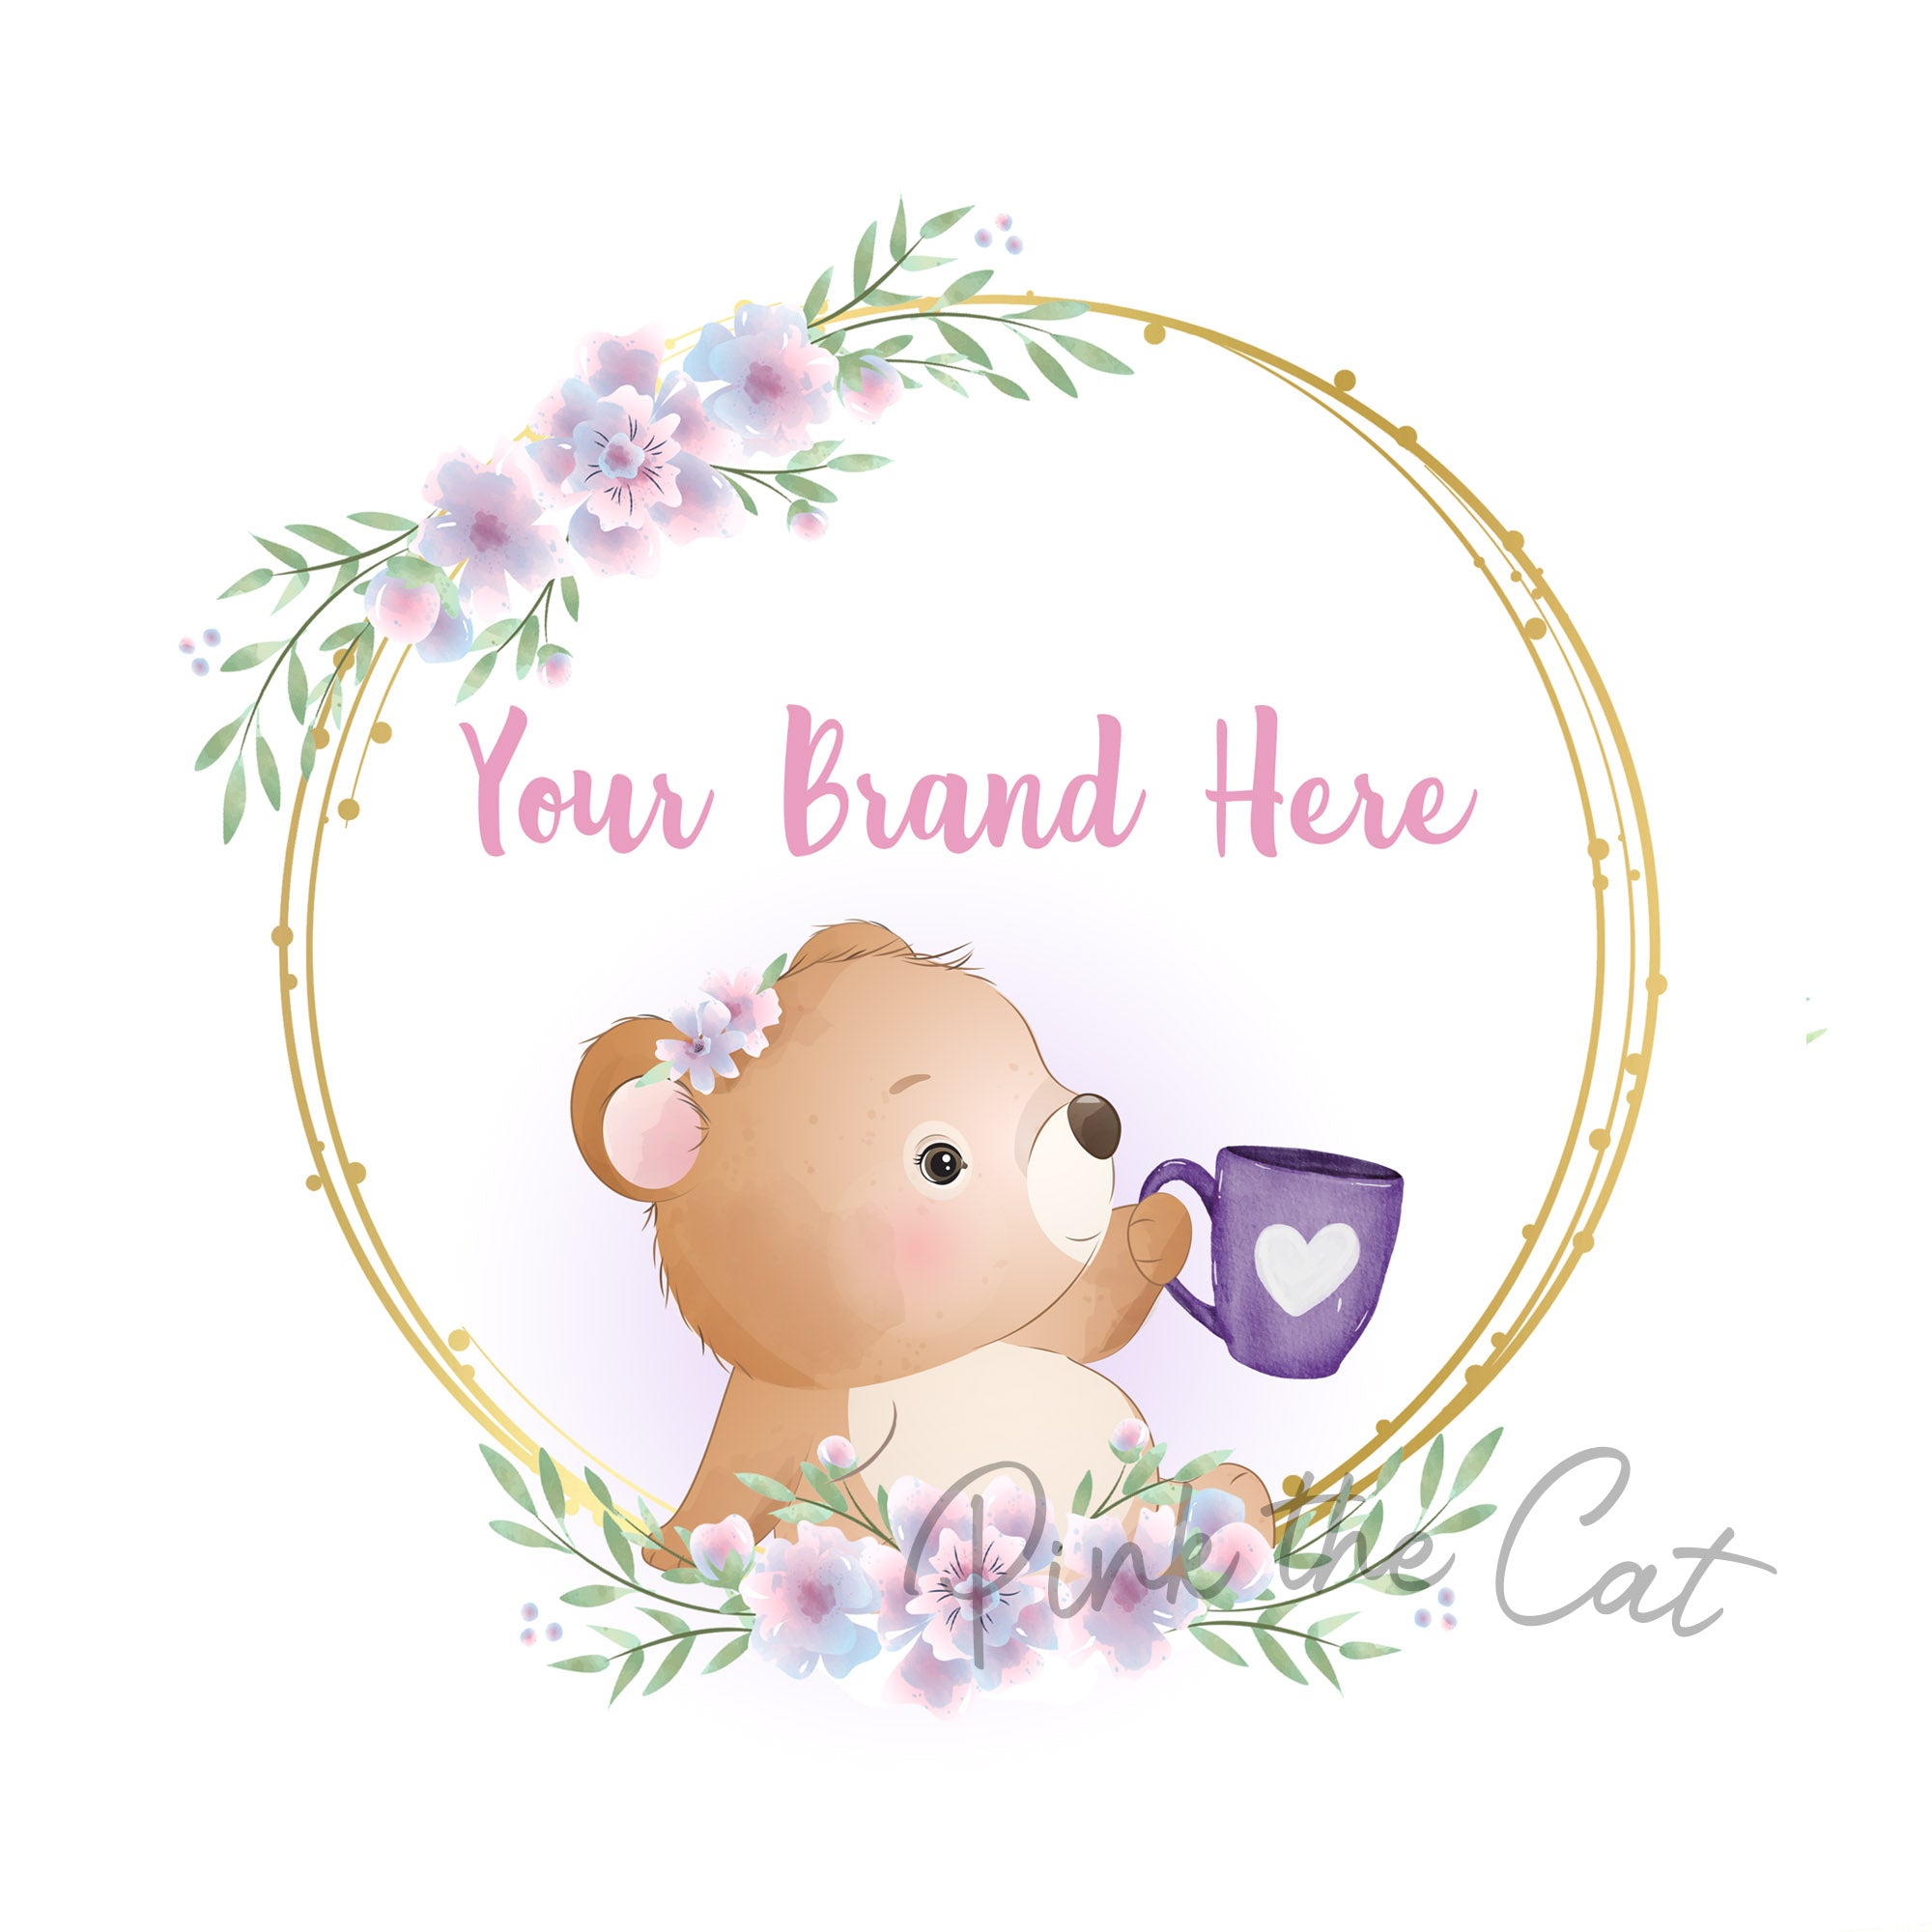 Bear holding mug logo with flowers